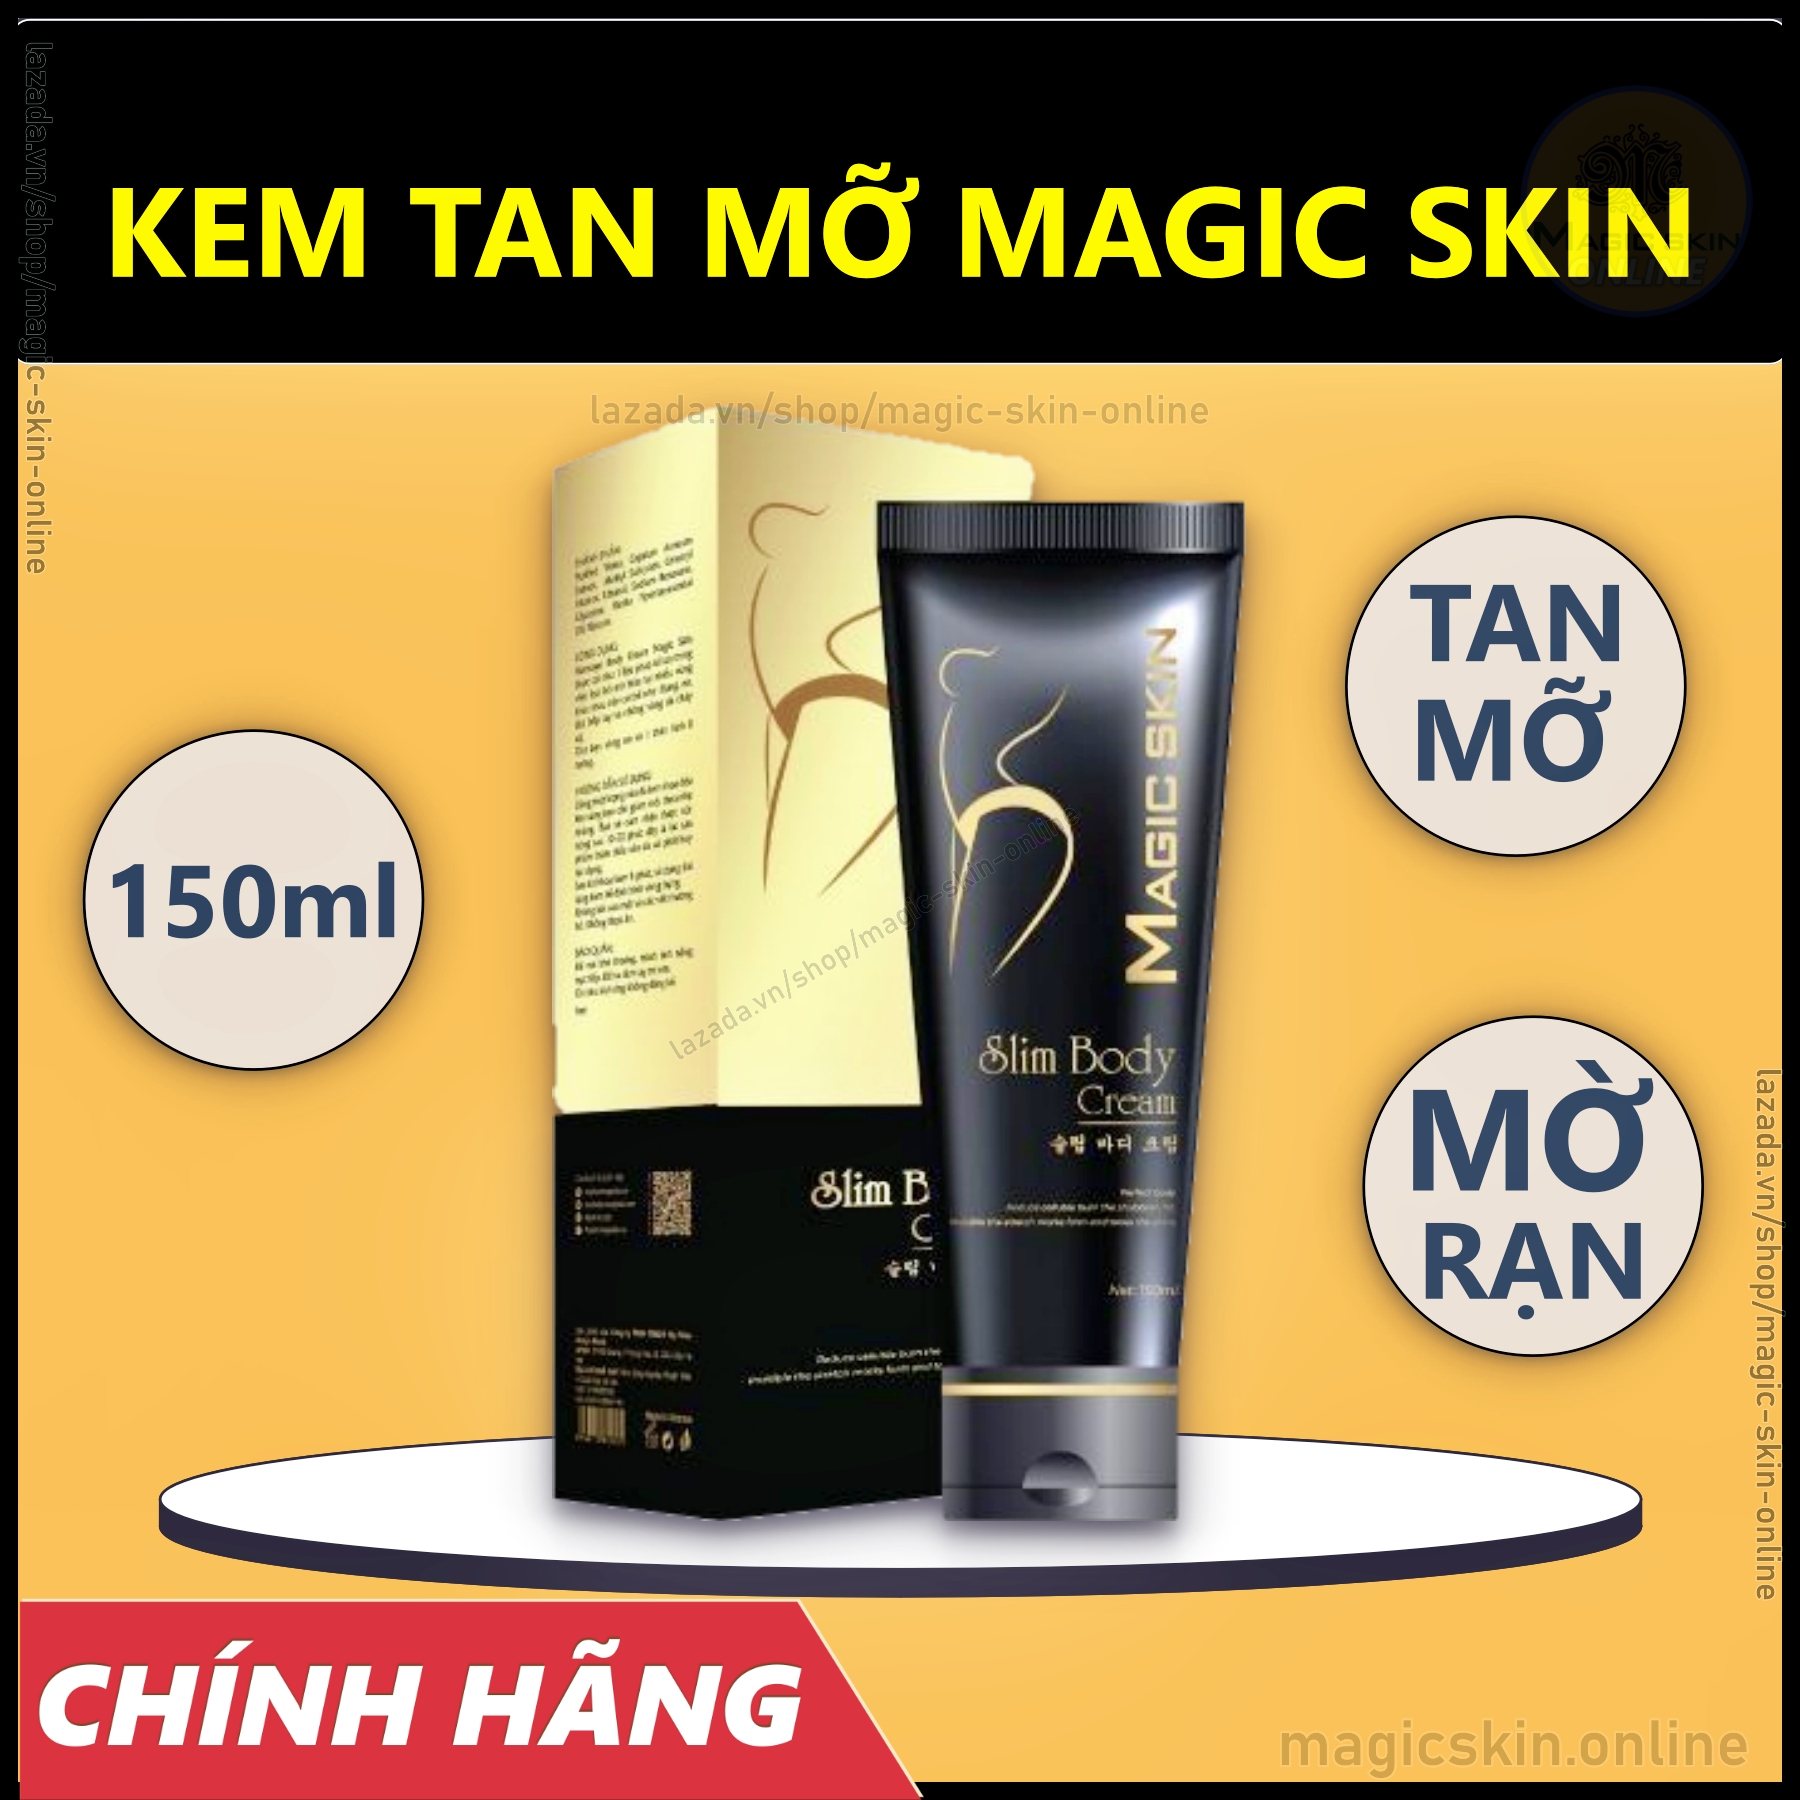 KEM TAN MỠ Slim Body Cream Magic Skin 👍 Gừng Quế ✔ CHÍNH HÃNG